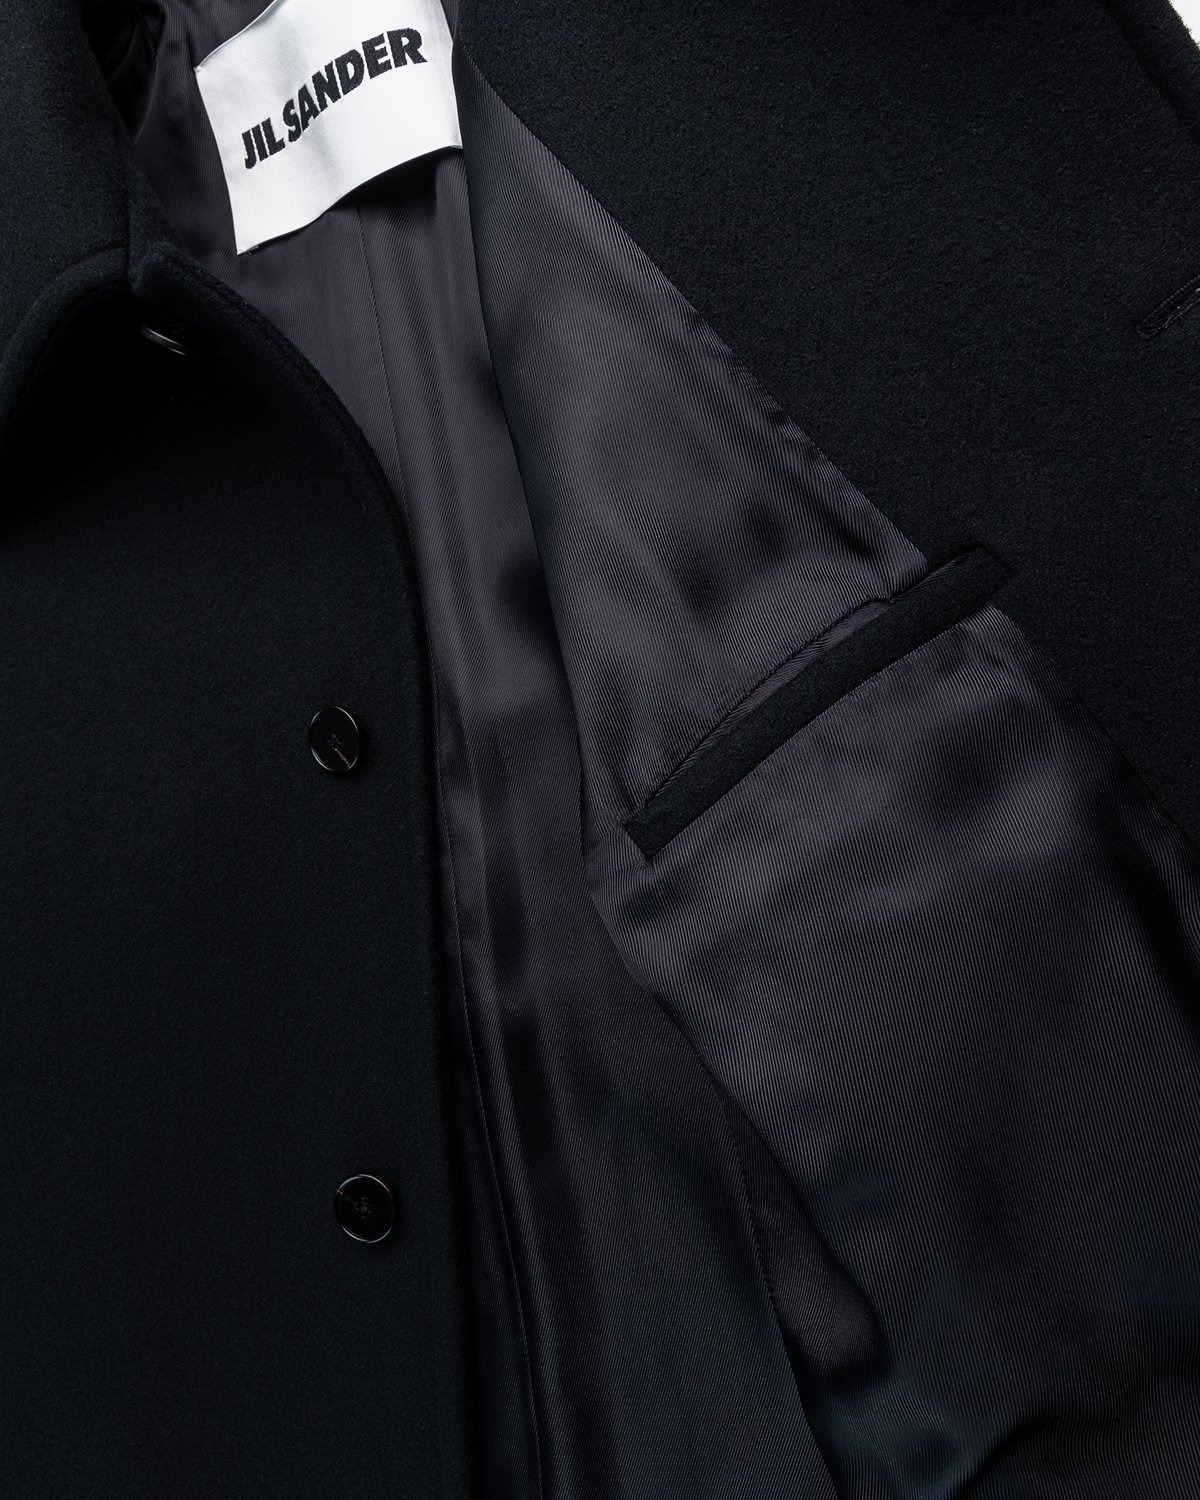 Jil Sander - Coat Black - Clothing - Black - Image 4